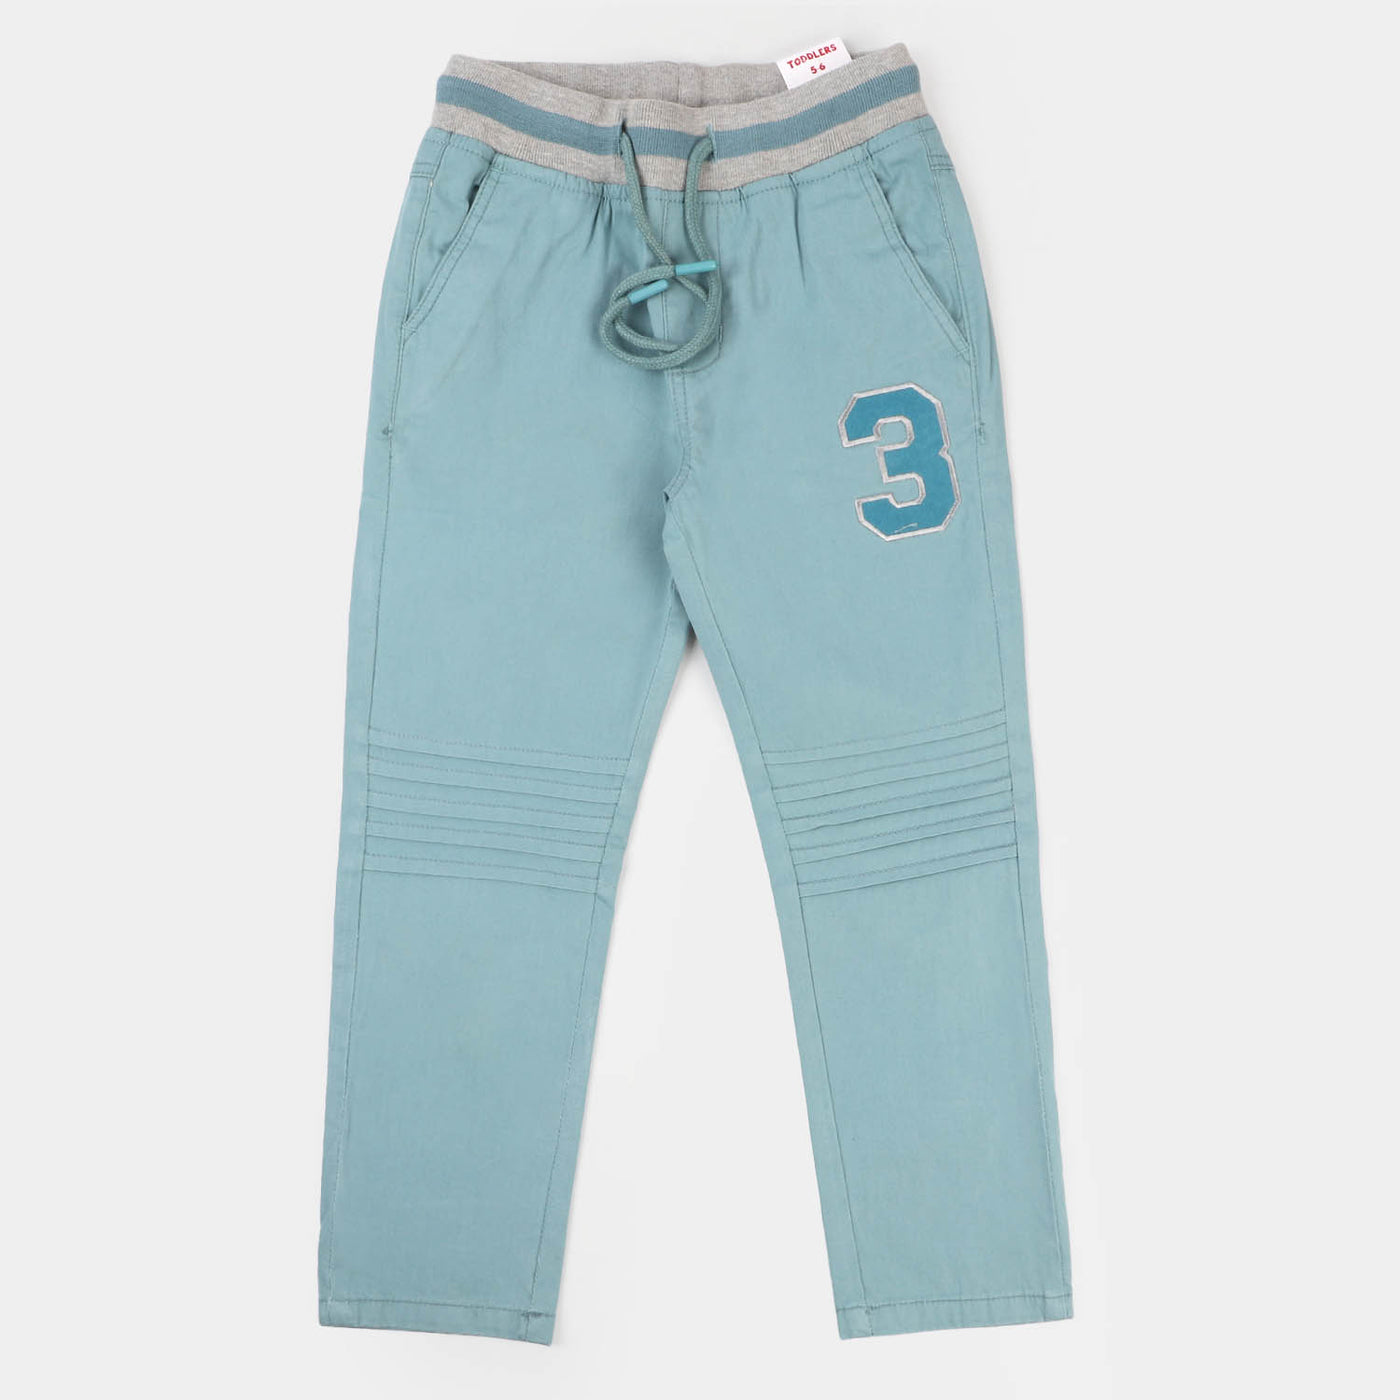 Boys Cotton Pant No-3 - Teal Blue